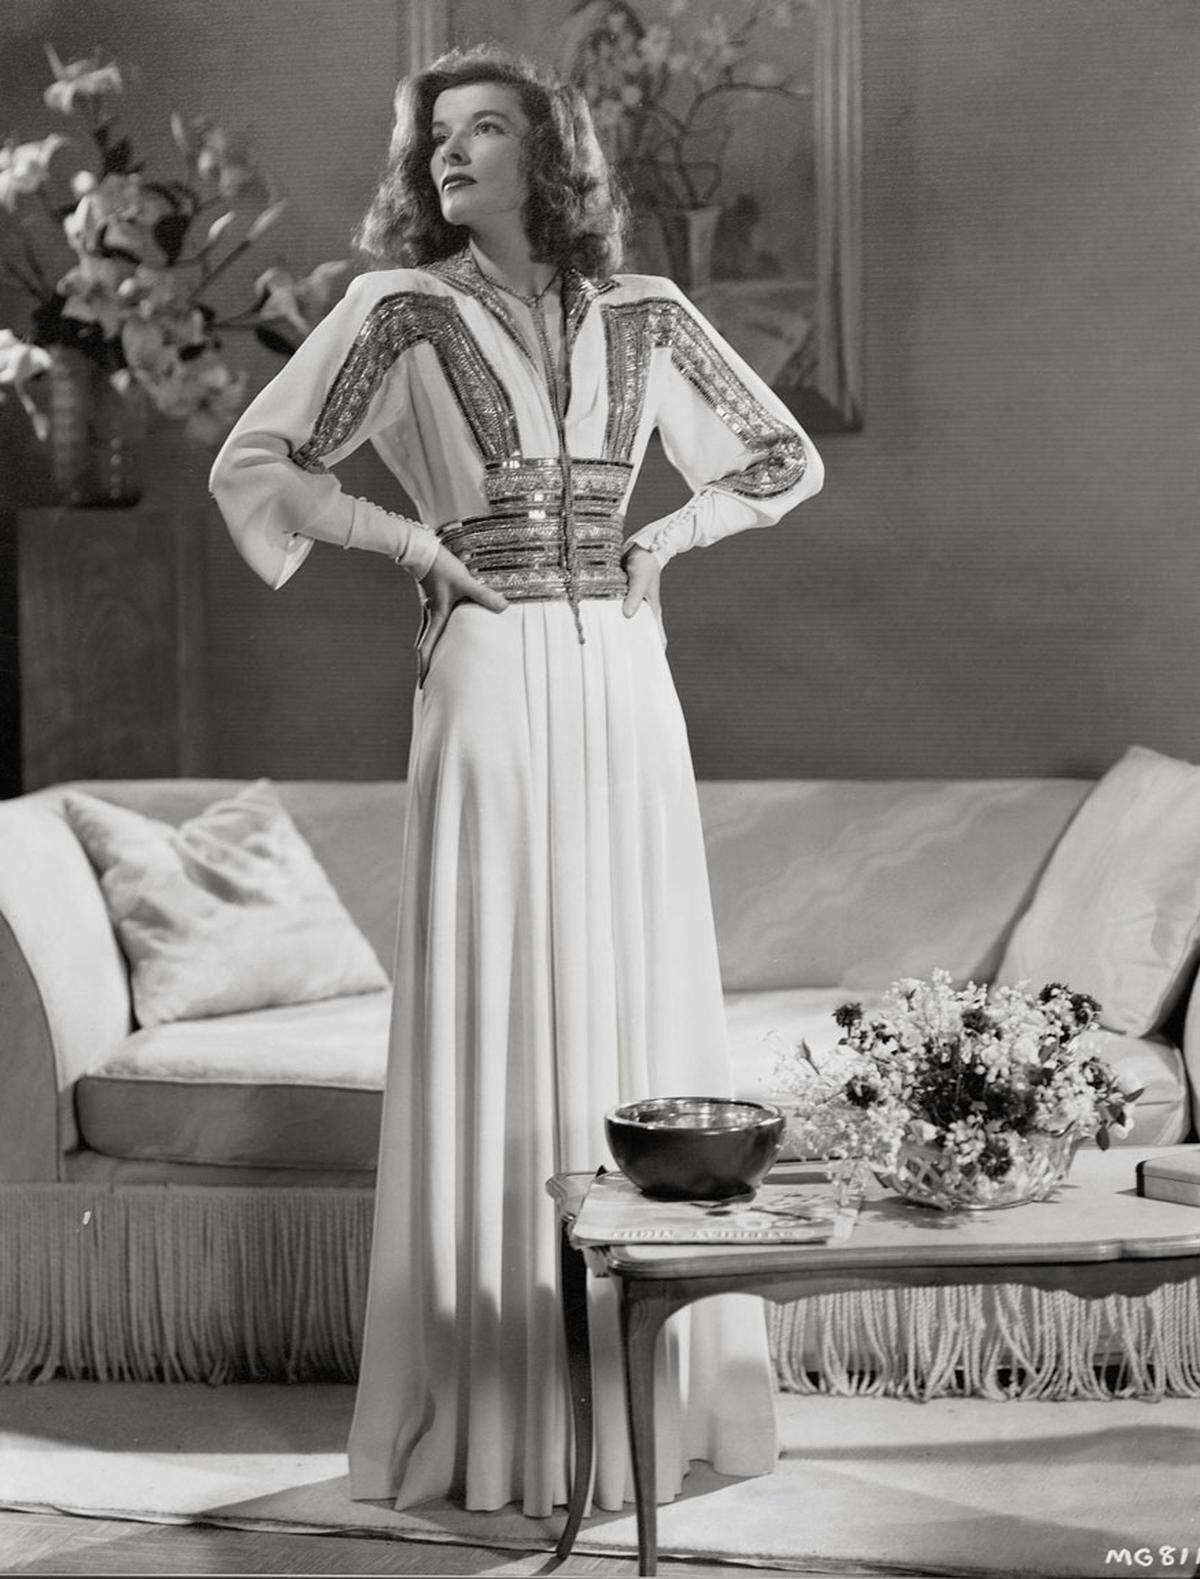 Katherine Hepburn verkörperte diesen Beauty-Look mit ihrer Größe und den breiten Schultern.